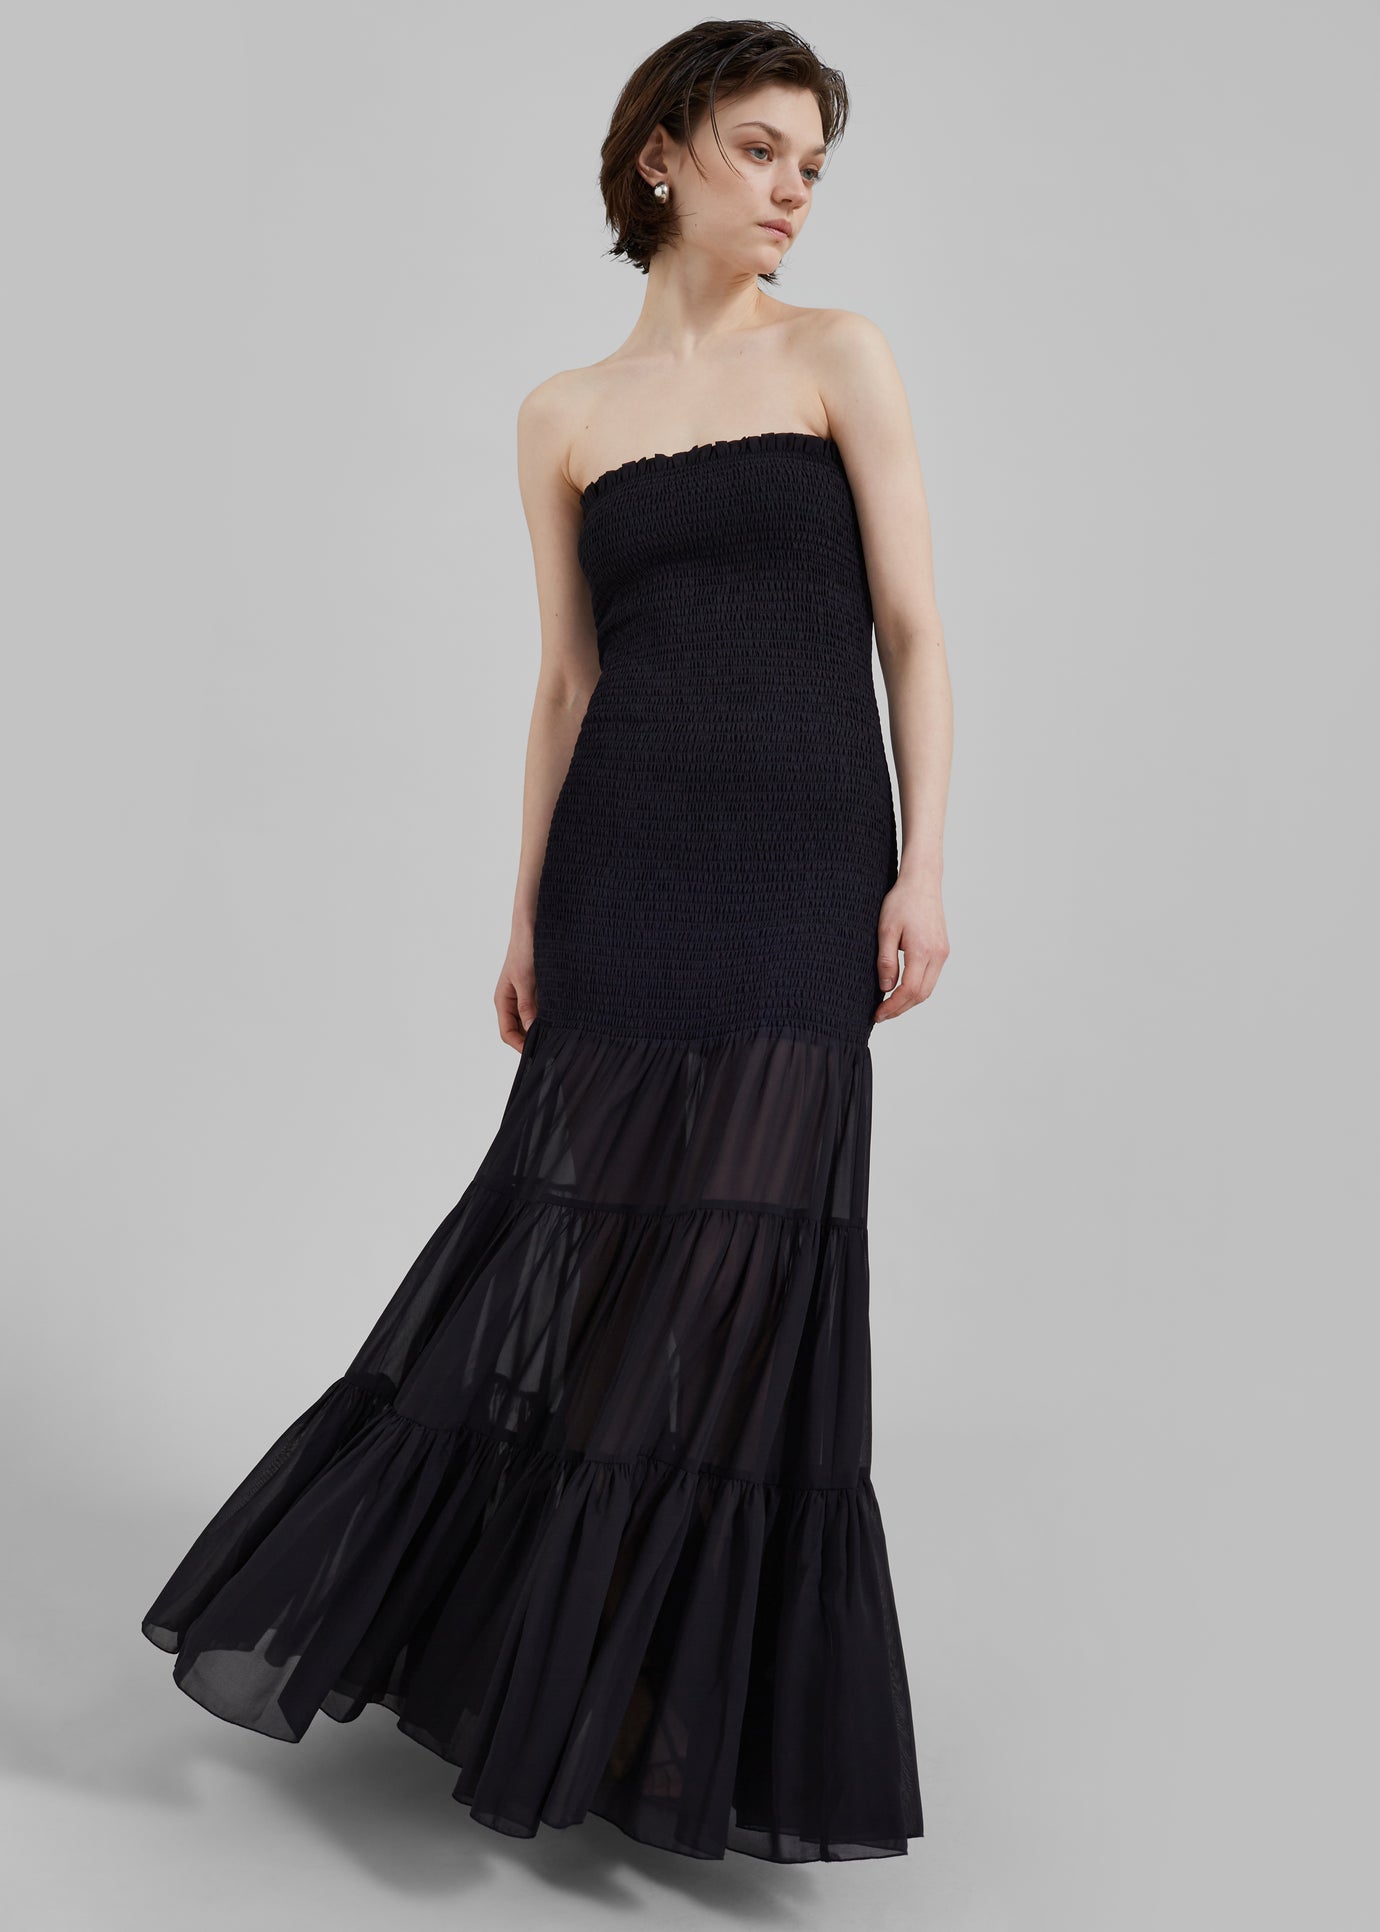 Rotate Chiffon Strapless Dress - Black